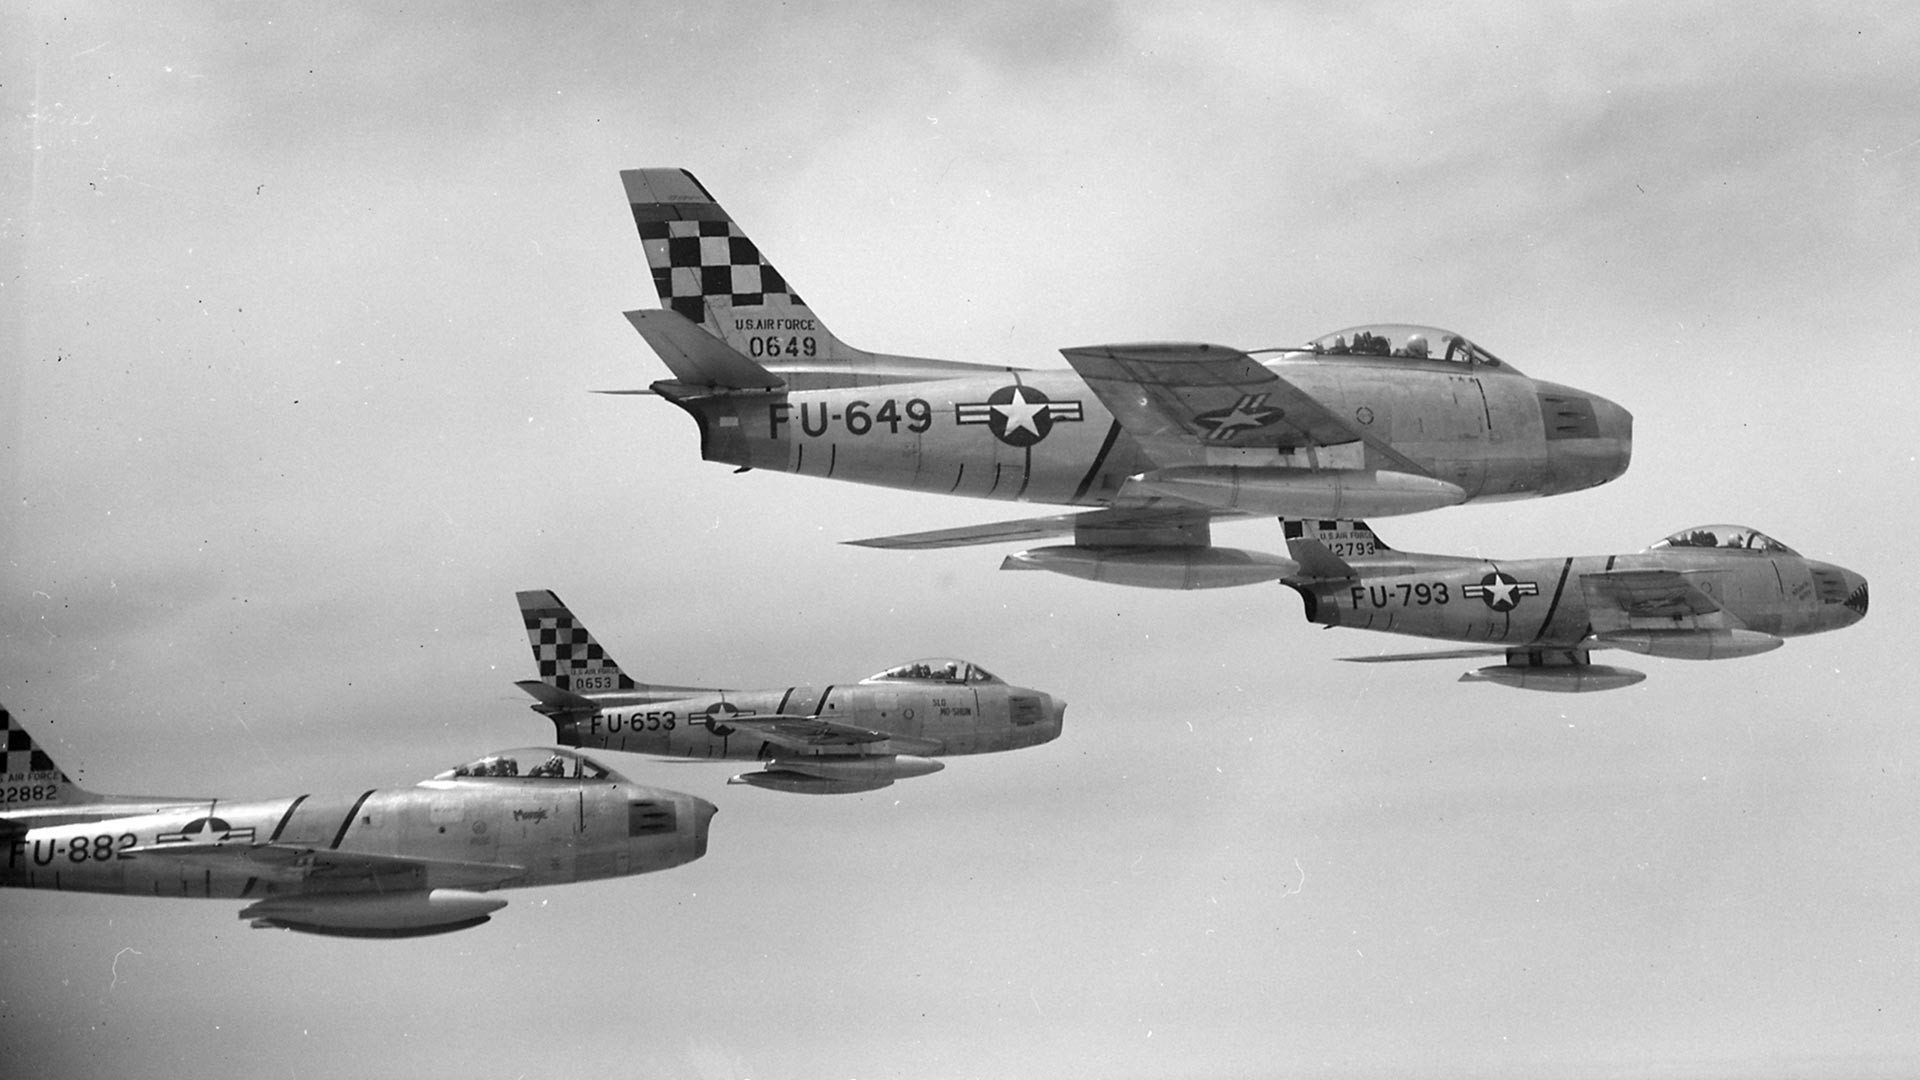 Četiri sjevernoamerička lovca F-86E Sabre u sastavu 51. grupe lovaca-presretača iznad Koreje 22. svibnja 1953. godine. Avioni FU-649 i FU-653 su model F-86E-5-NA, FU-793 je model F-86E-10-NA, dok je FU-882 model F-86E-6-CAN koji je originalno proizvela Kanada, ali isporučila zrakoplovstvu SAD-a.
